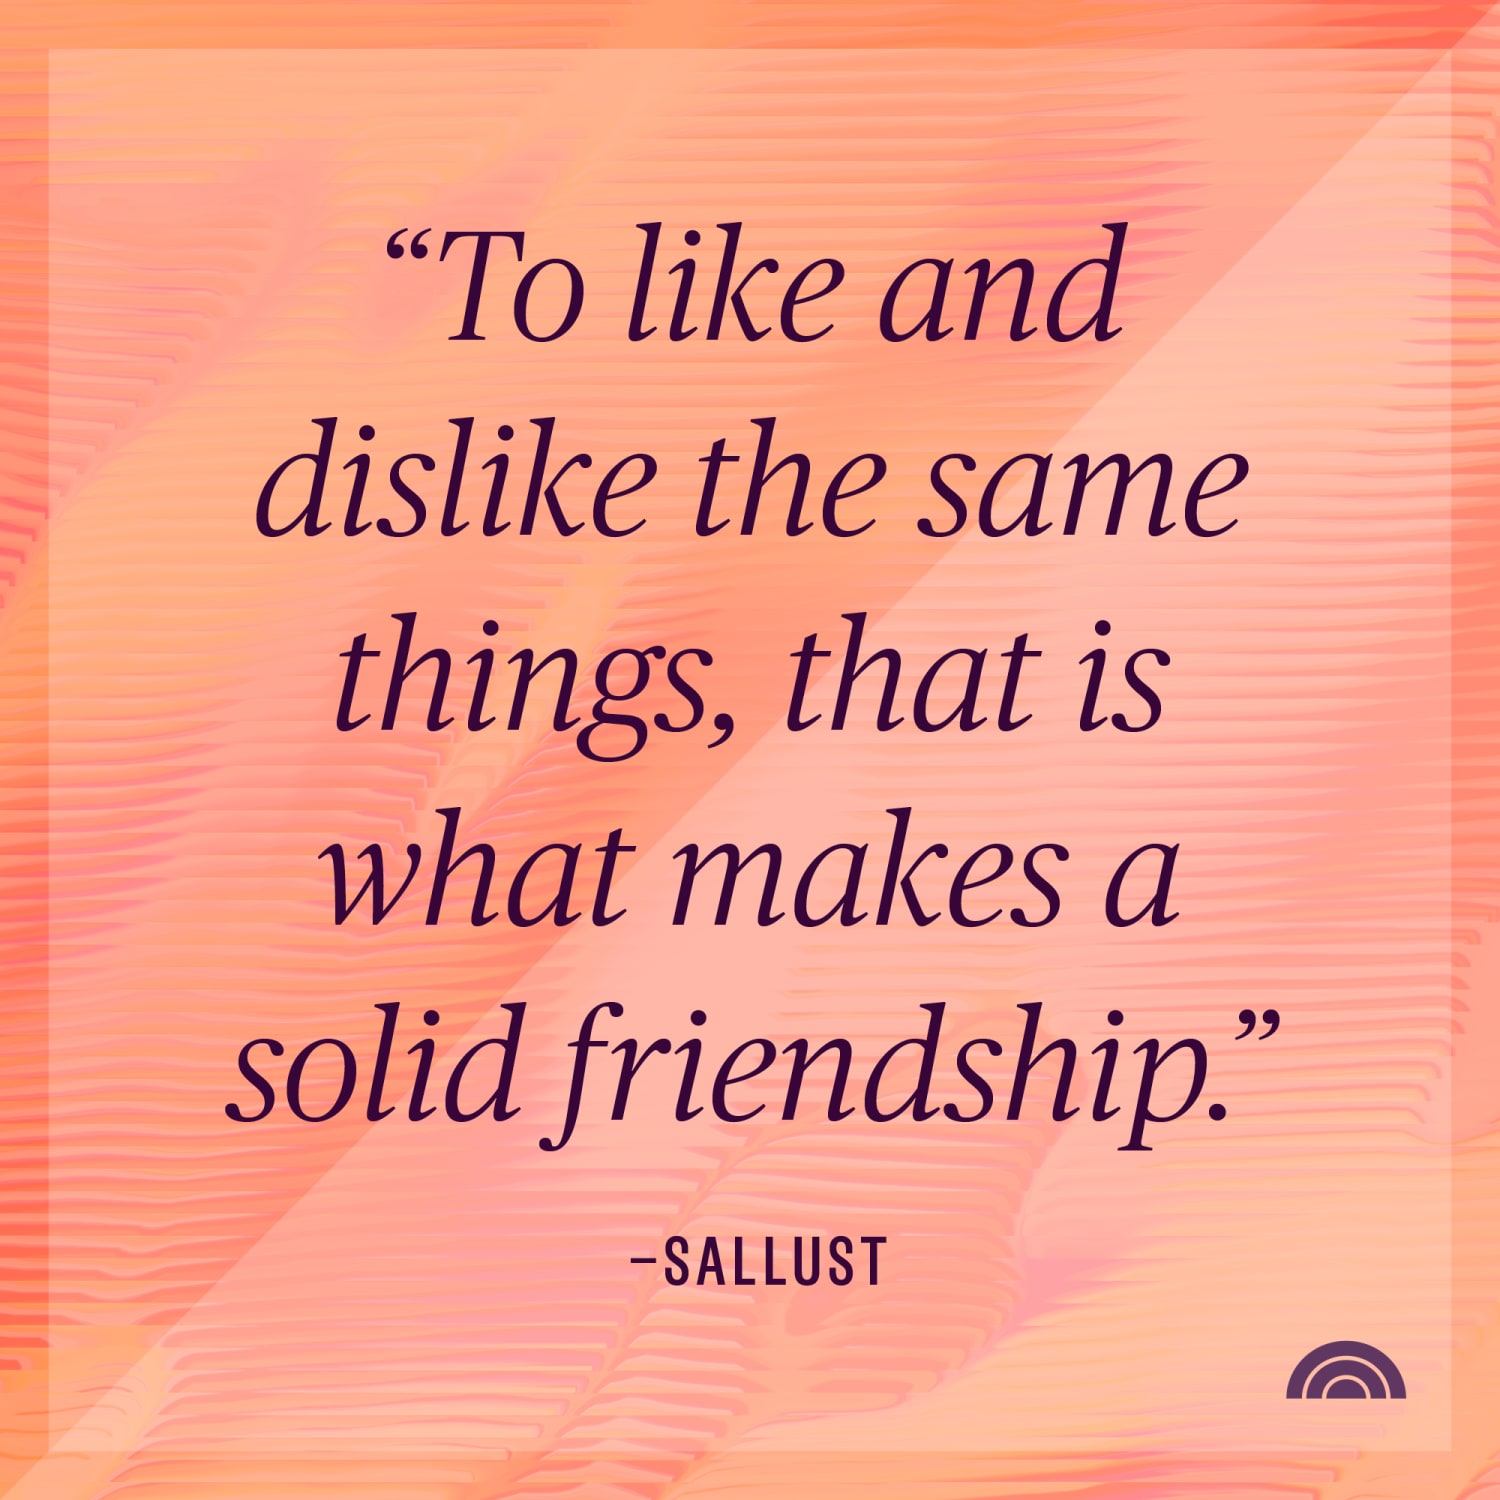 55 Best Friend Quotes - Short Quotes About True Friends